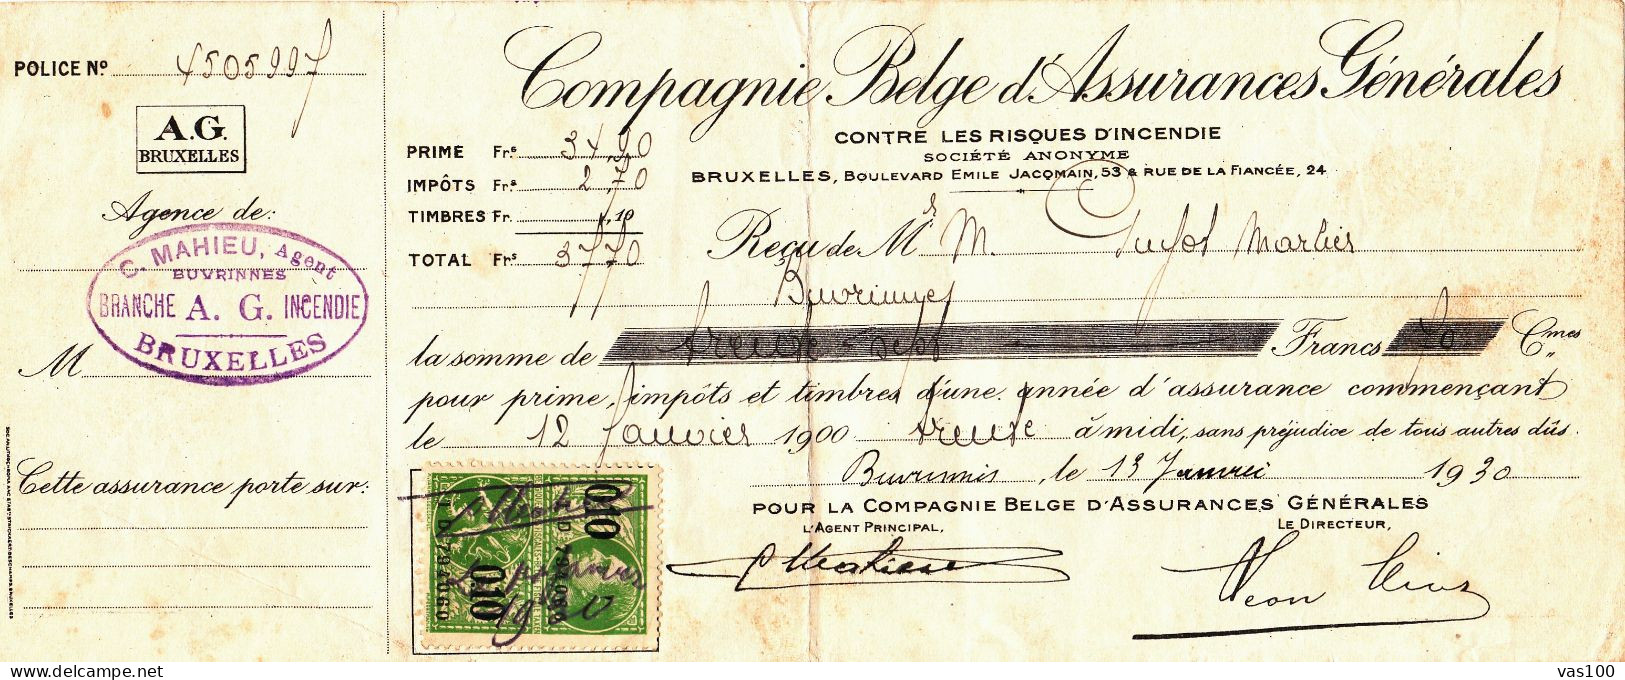 COMPAGNIE BELGE D'ASSURANCES GENERALES CONTRE LES RISQUES D'INCENDIE 1930 BELGIUM - Documentos